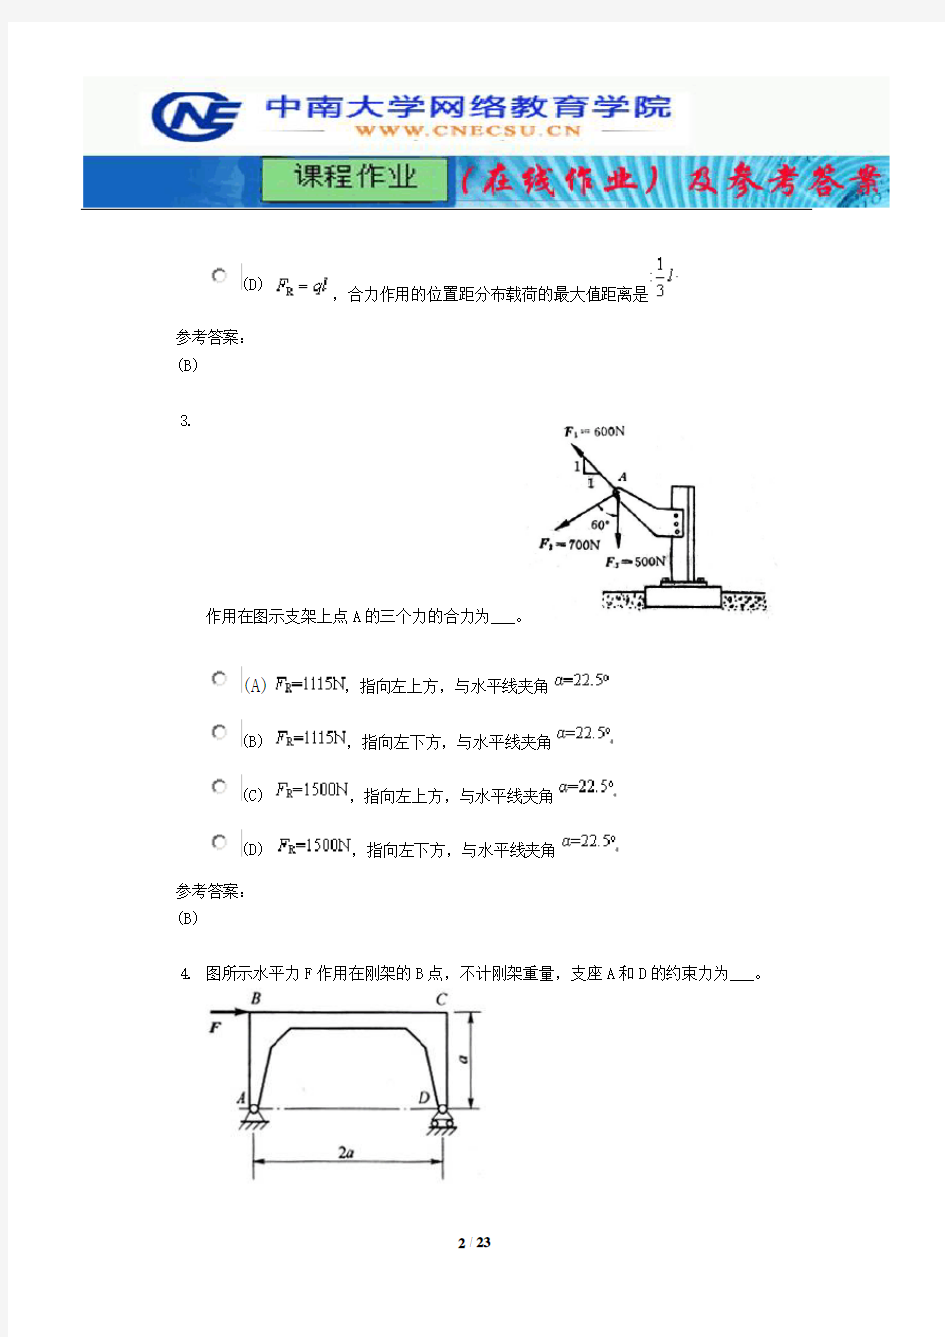 中南大学《工程力学》课程作业(在线作业)一及参考答案